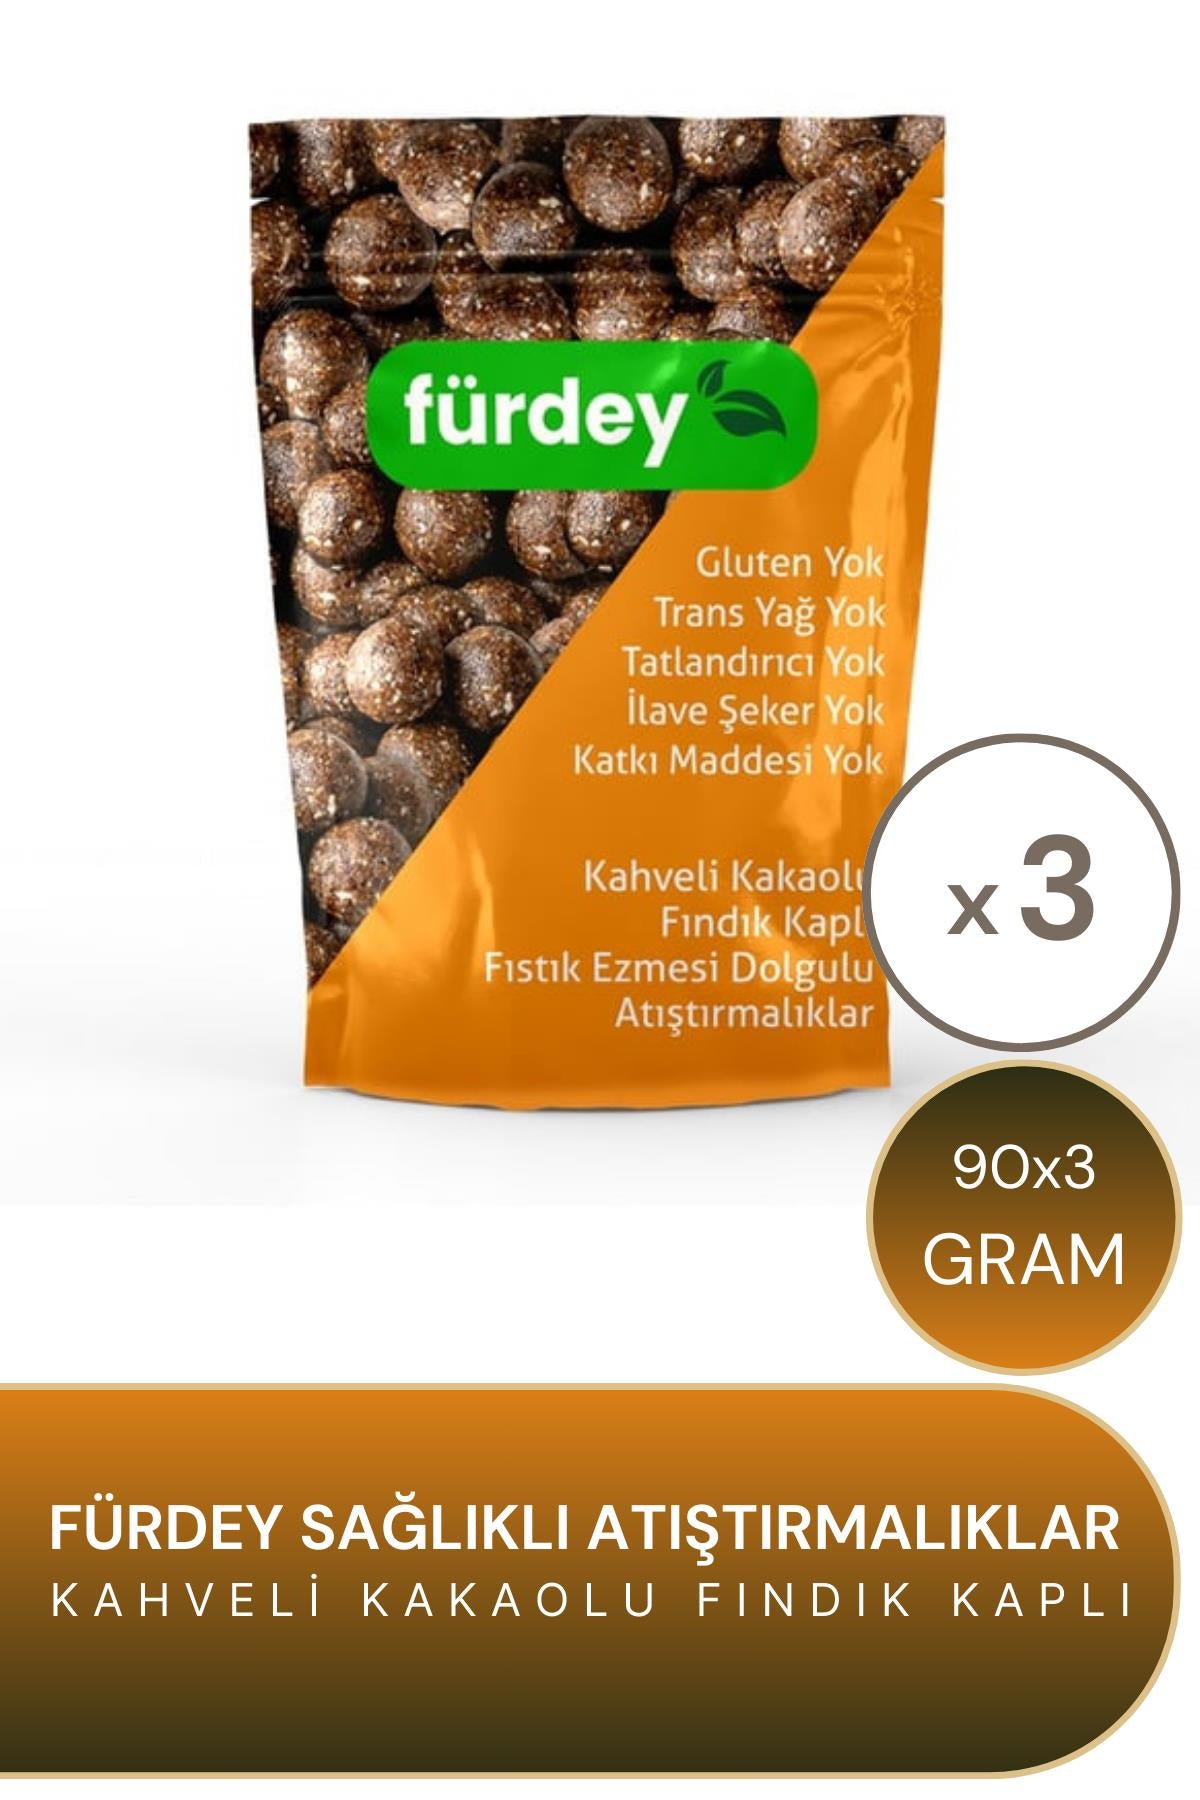 Fürdey Kahveli Kakaolu Fındık Kaplı Sağlıklı Atıştırmalıklar 90 g 3'lü Paket